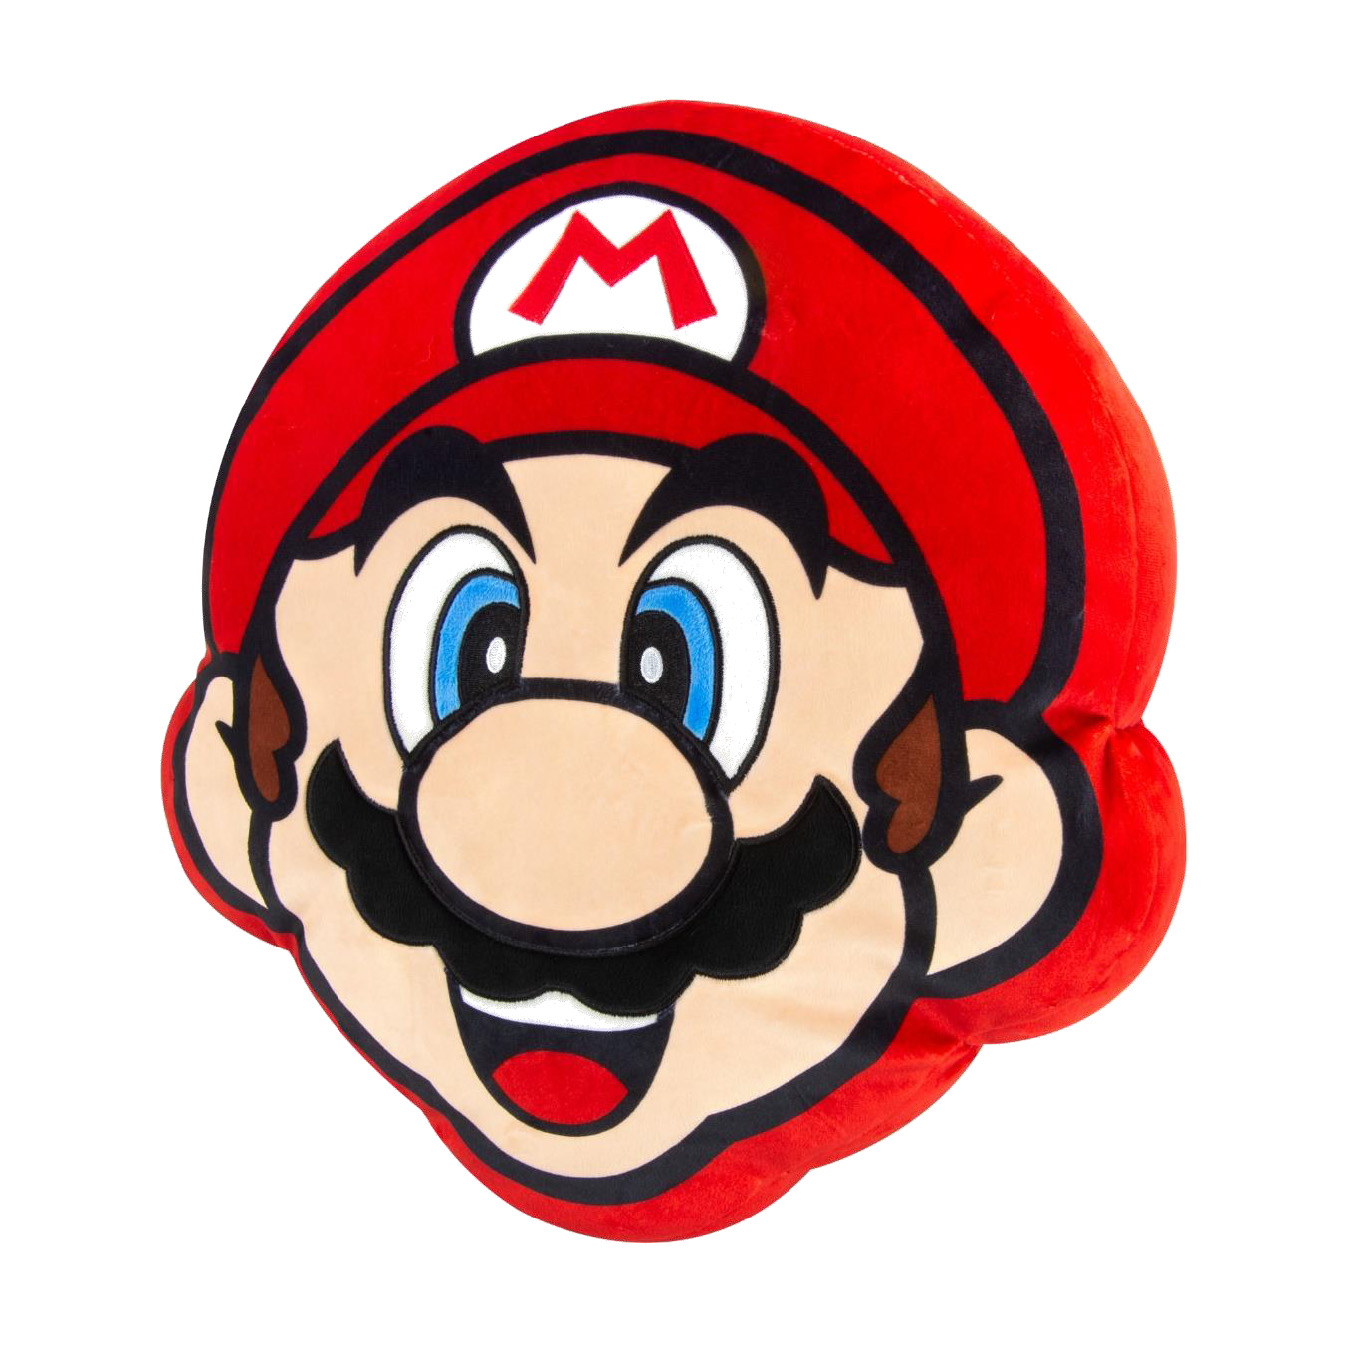 Sherwood Media Peluche Super Mario Luigi 26 cm